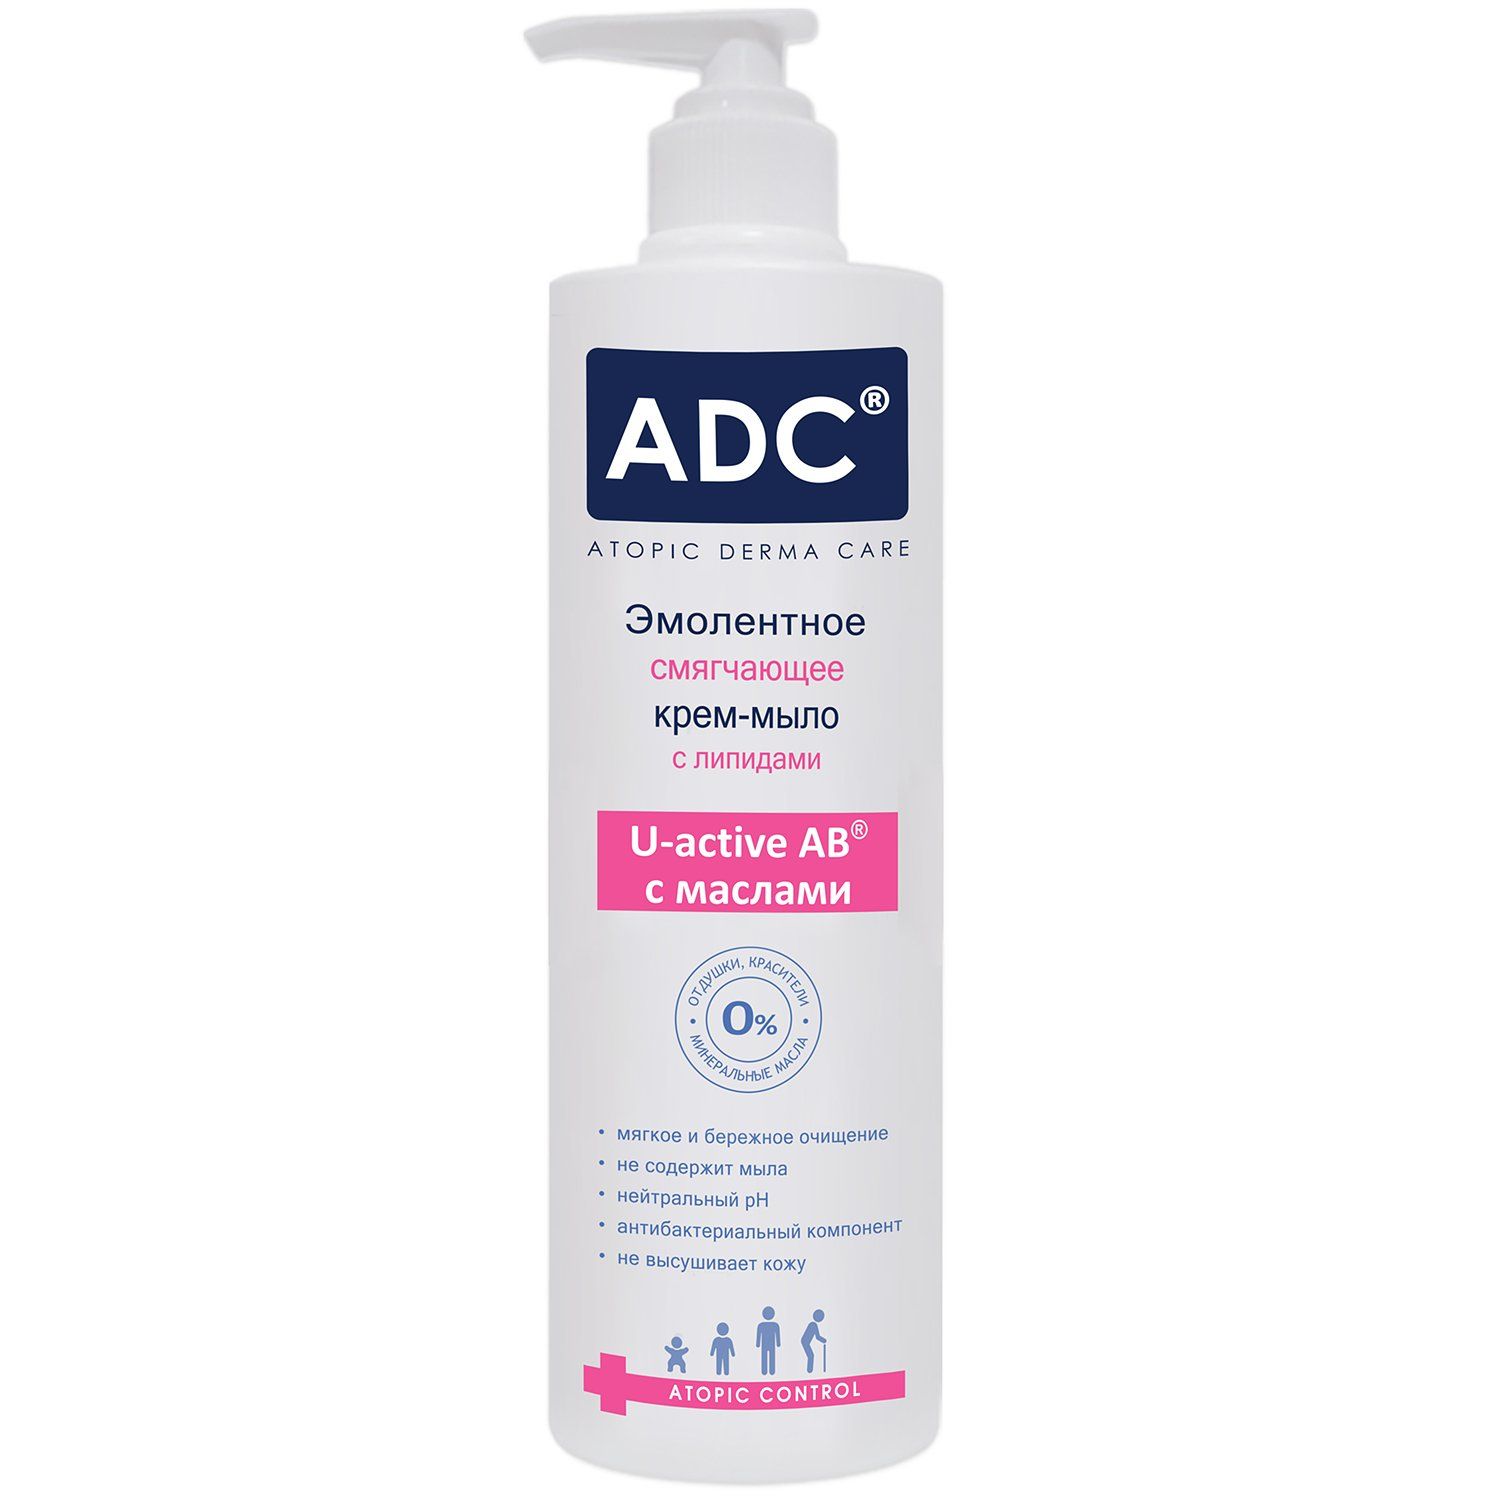 ADC крем-эмульсия питательная гидрорегулирующая для детей. ADC гель эмолентный atopic Control для купания и мытья волос. Гель для купания для атопичной кожи. Эмоленты для купания